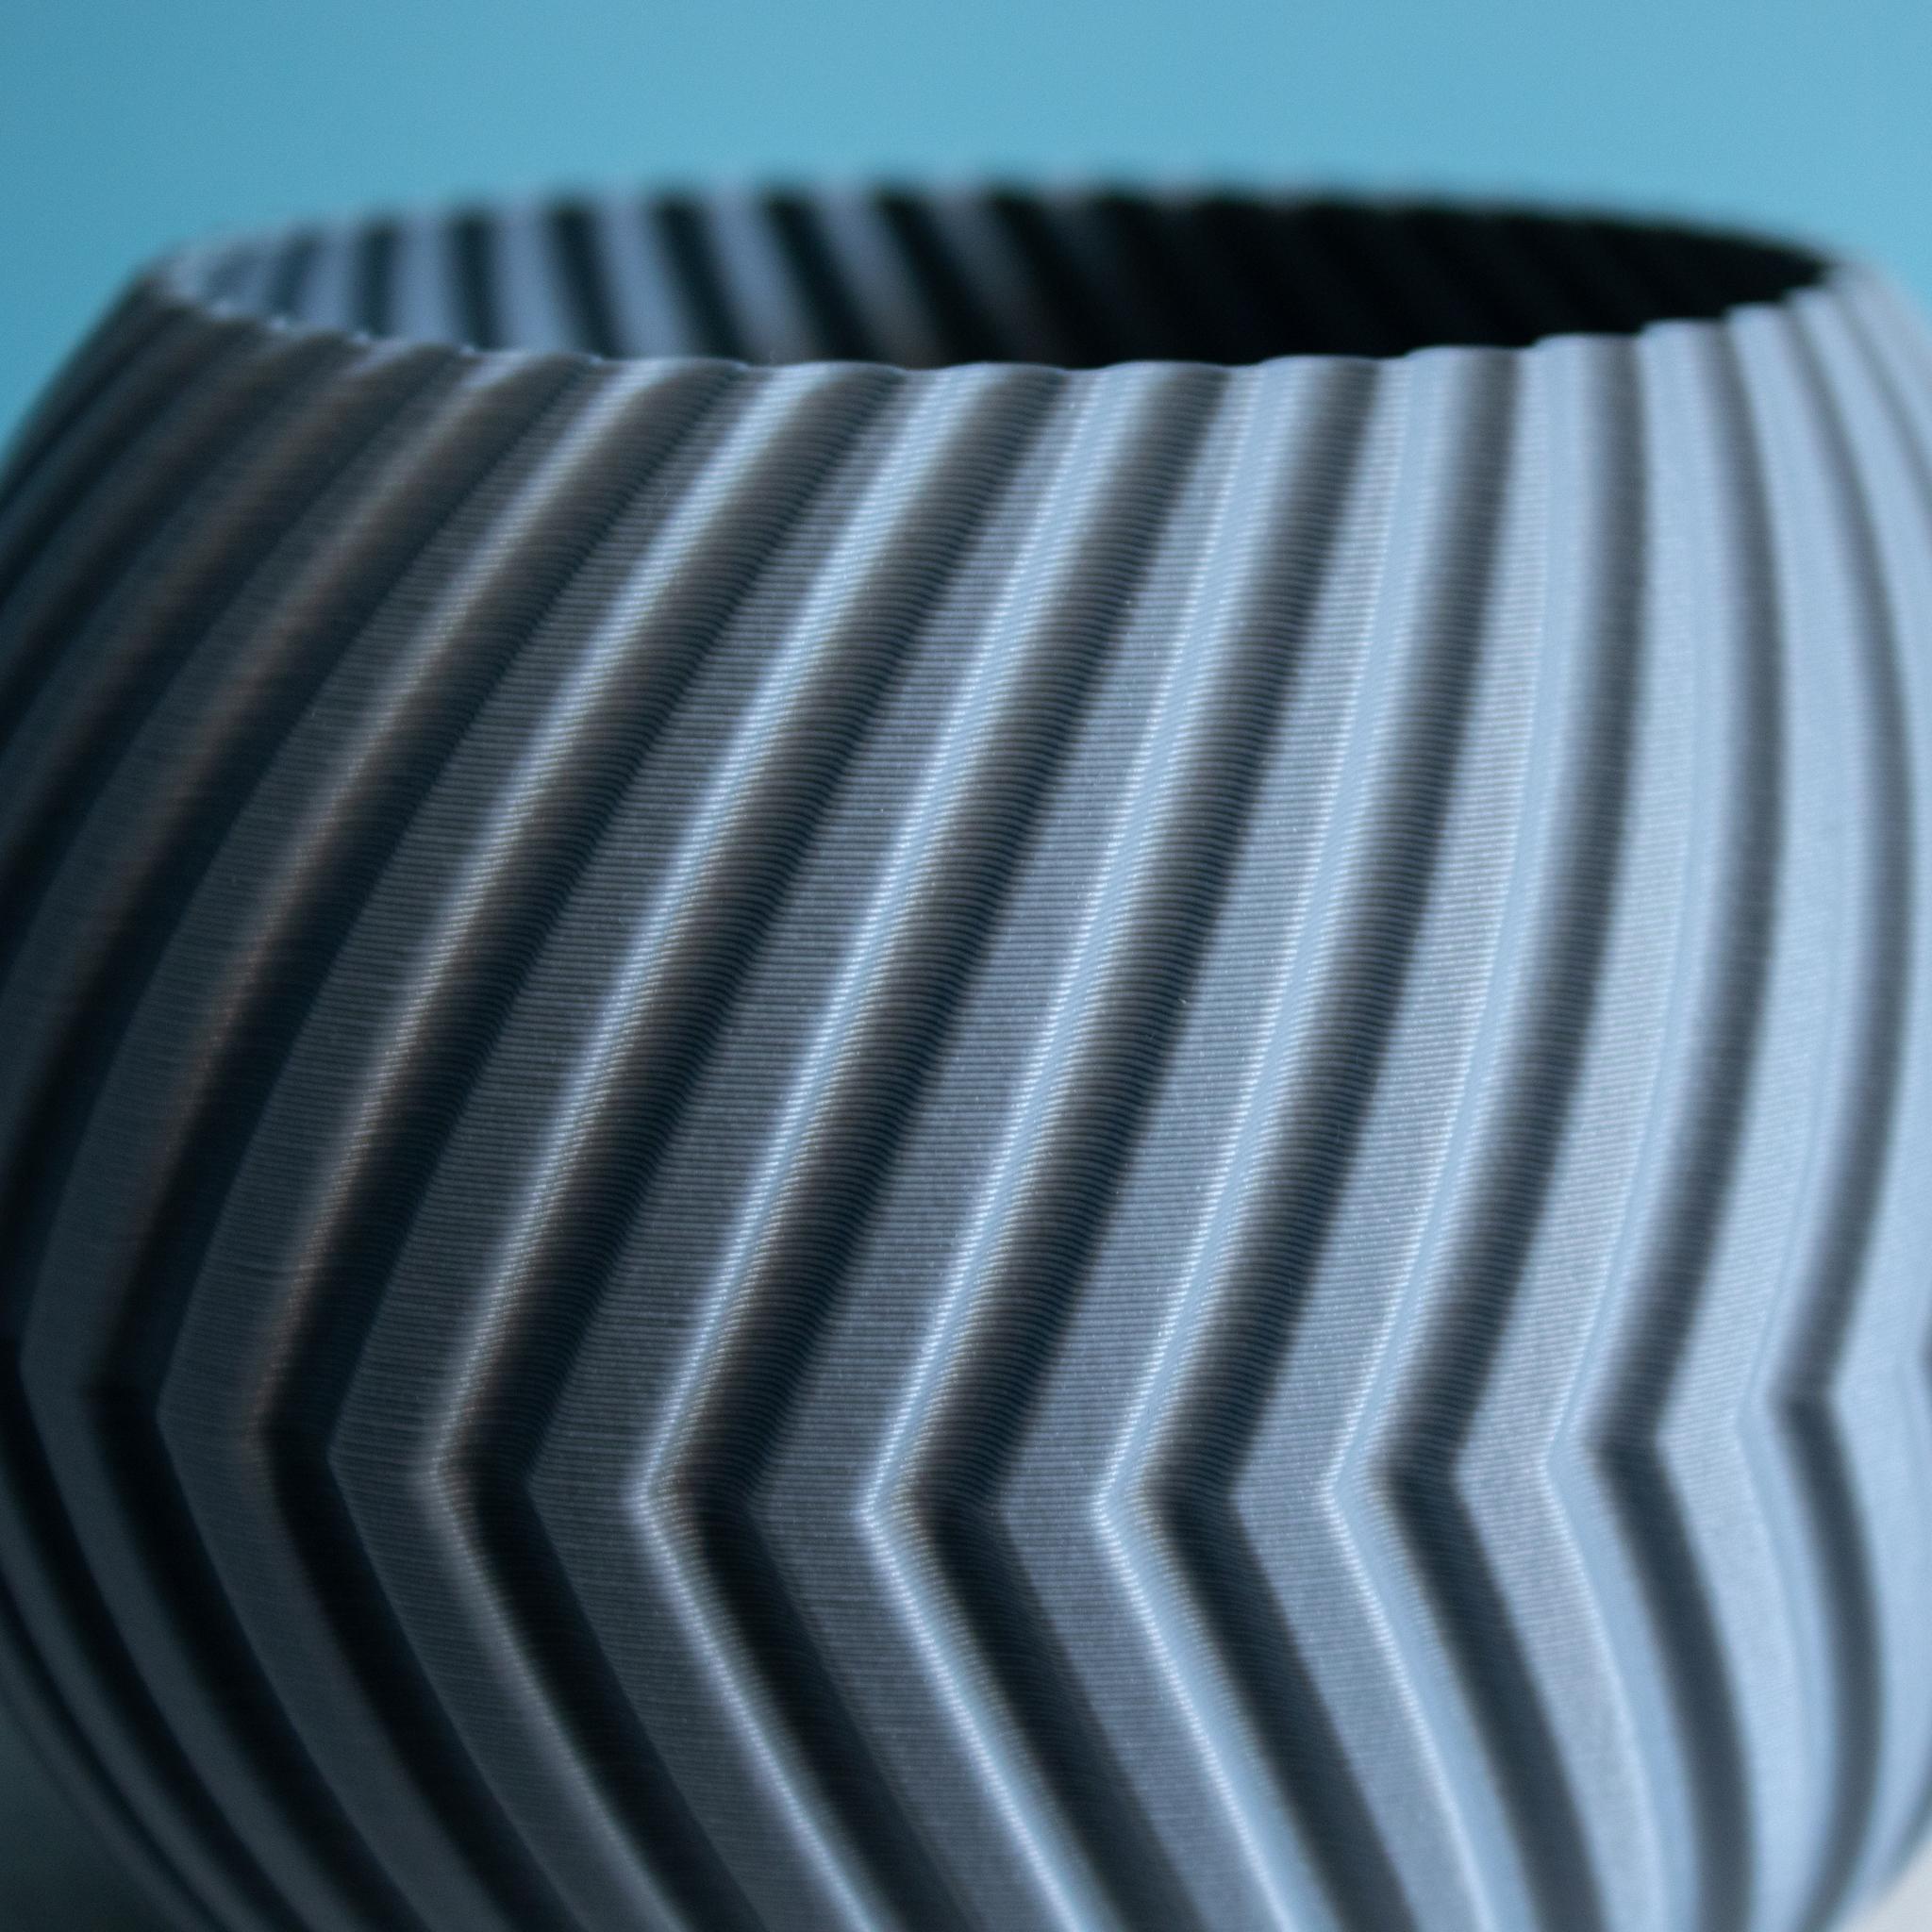 Sphere Planter Split, Vase Mode, Slimprint 3d model